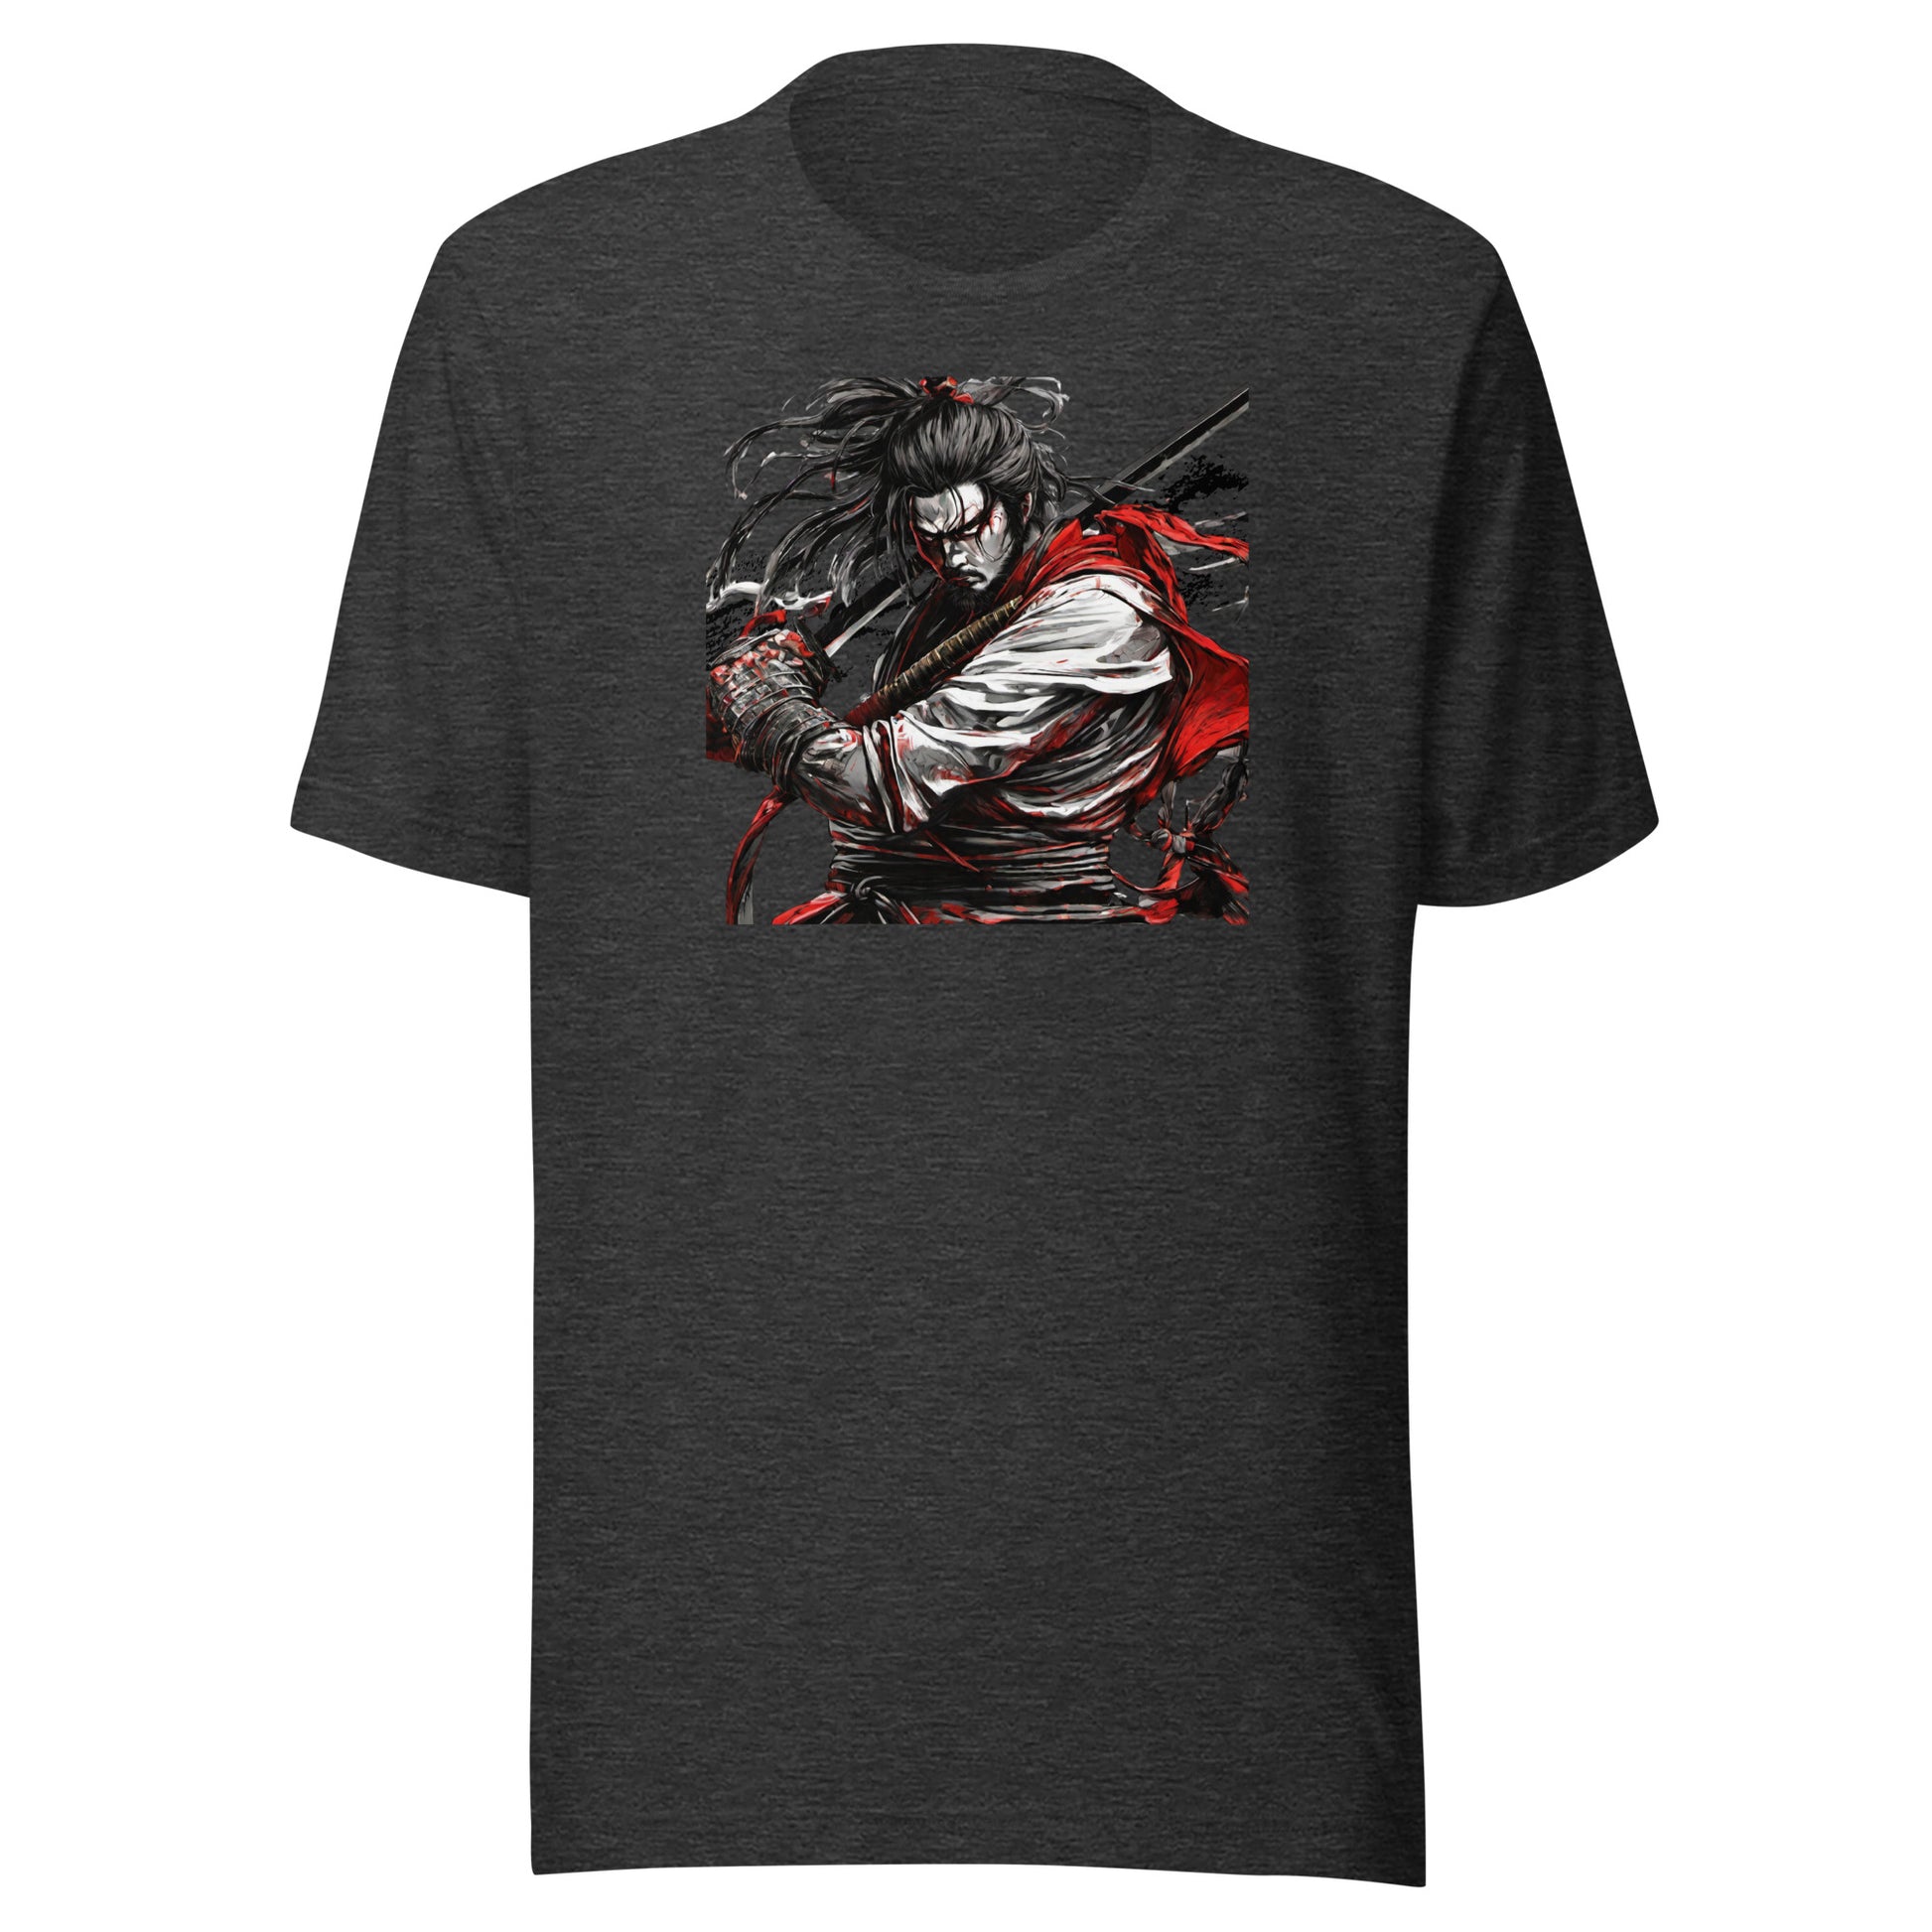 Graceful Warrior Men's Graphic T-Shirt Dark Grey Heather